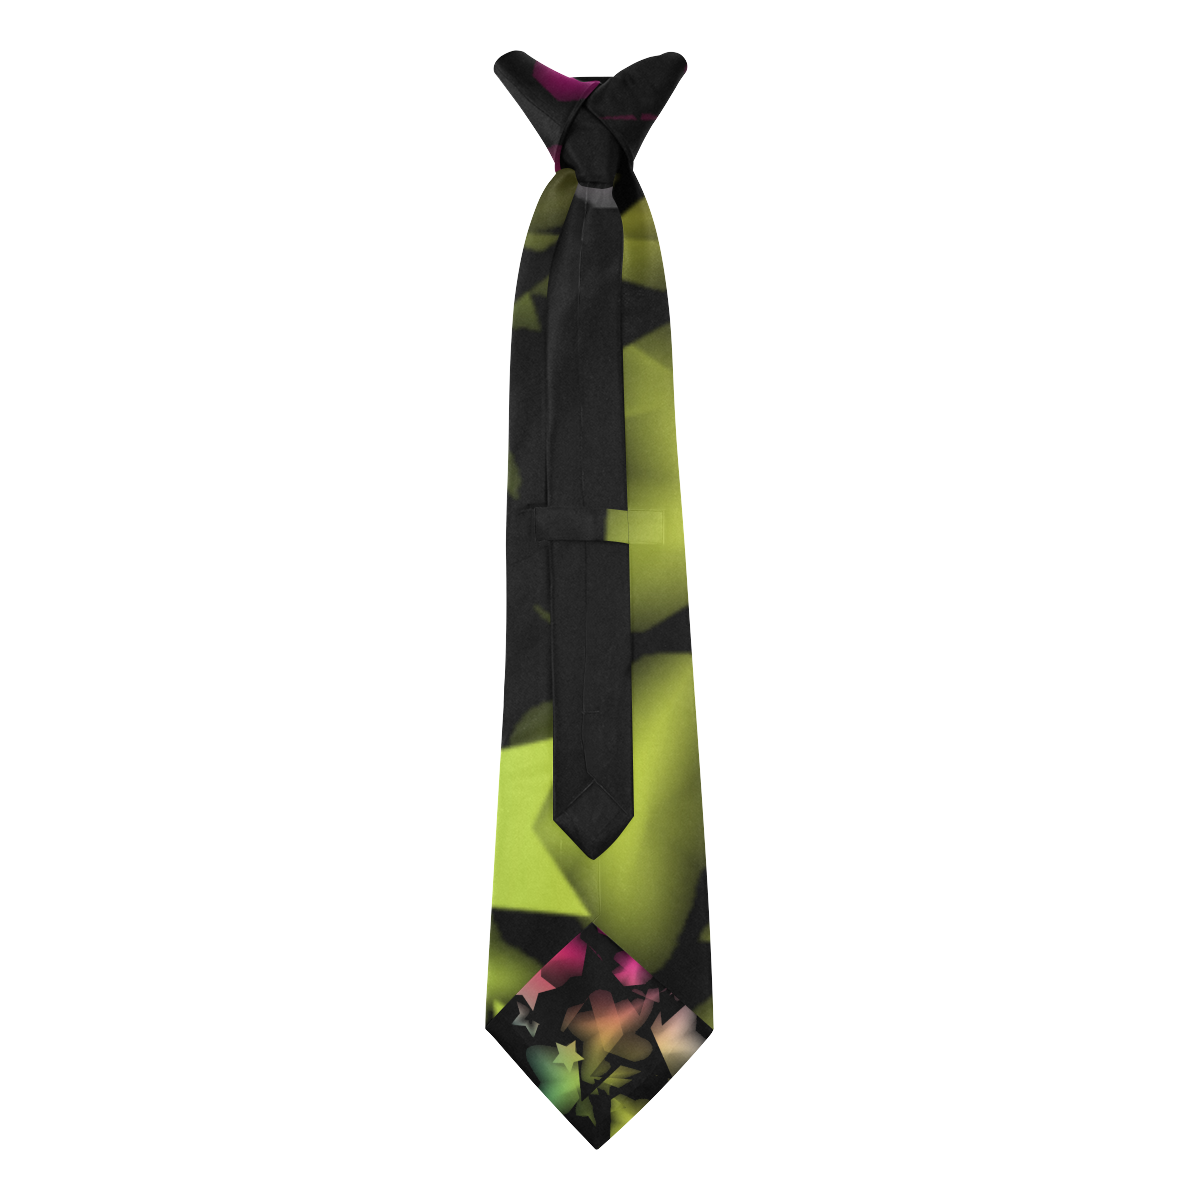 StarColor Tie Custom Peekaboo Tie with Hidden Picture